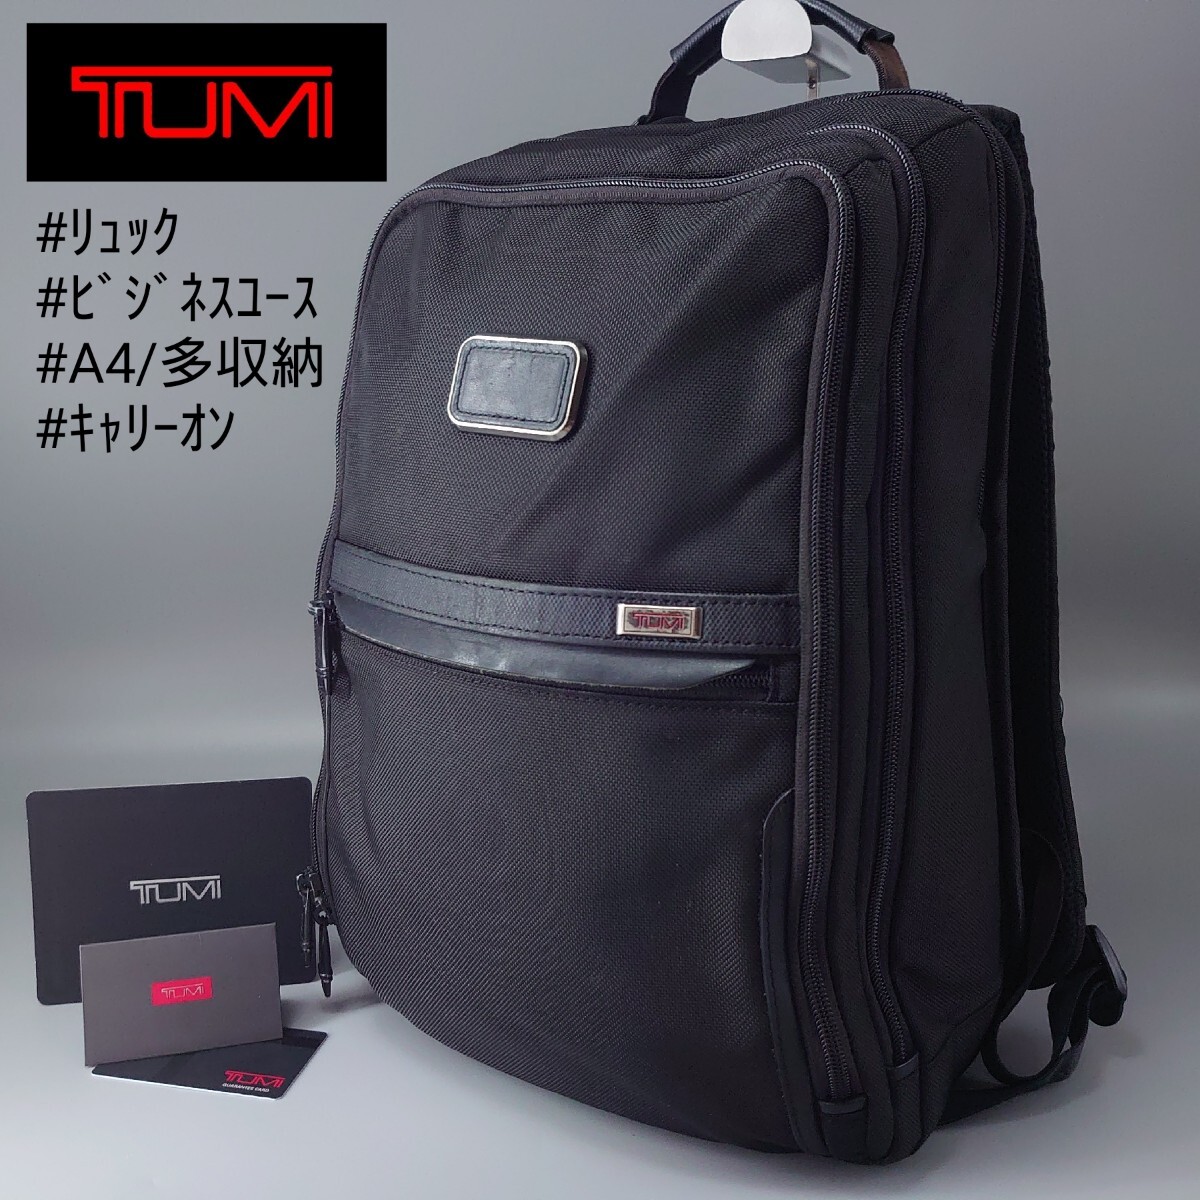 TUMI トゥミ Alpha3 slim スリム バックパック 2603581D3 バリスティックナイロン ブラック 黒 リュック ビジネス メンズ キャリーオンの画像1